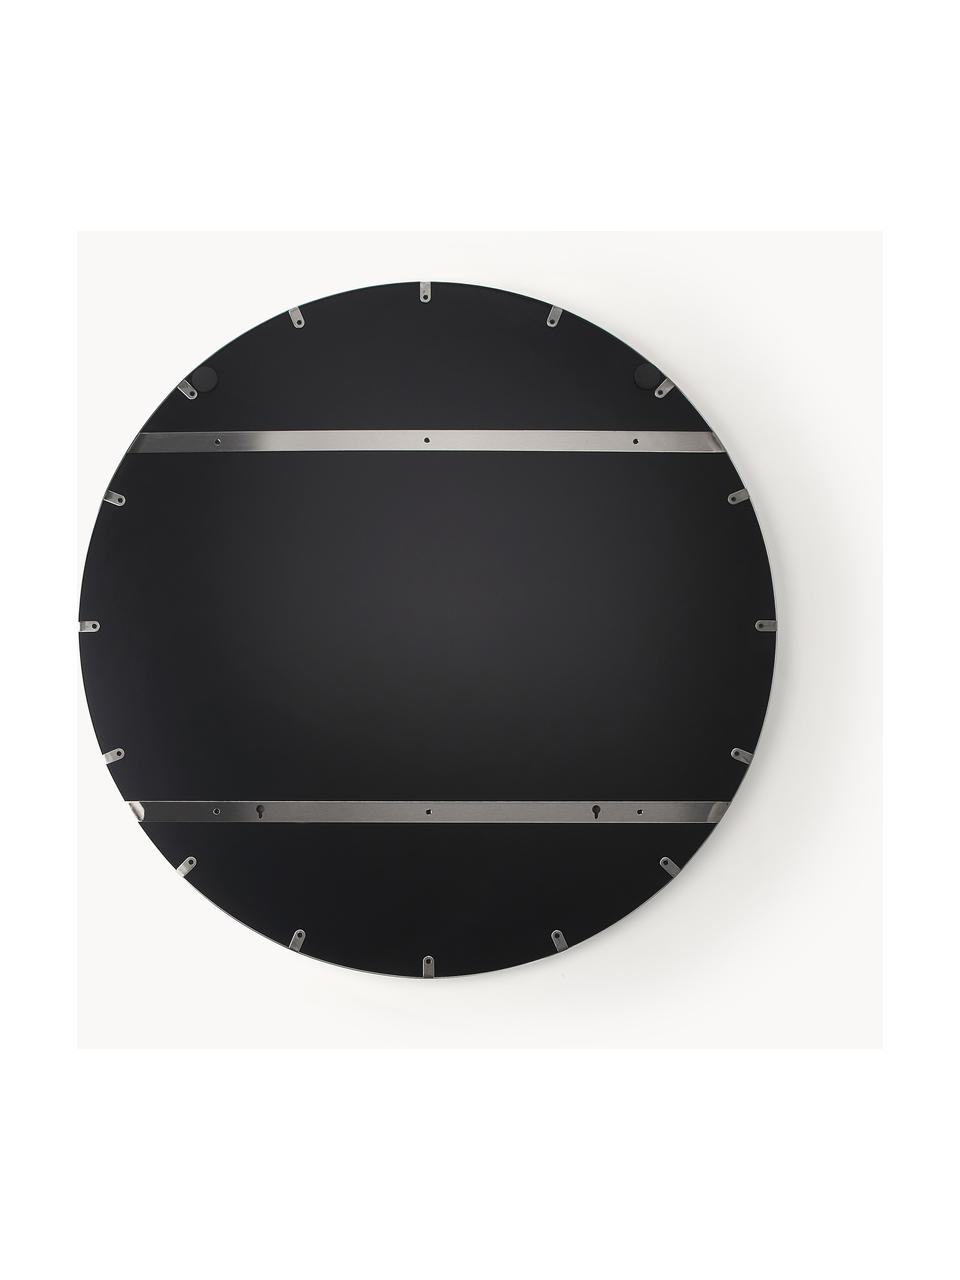 Runder Wandspiegel Lacie, Rahmen: Metall, beschichtet, Rückseite: Mitteldichte Holzfaserpla, Spiegelfläche: Spiegelglas, Silberfarben, Ø 100 cm